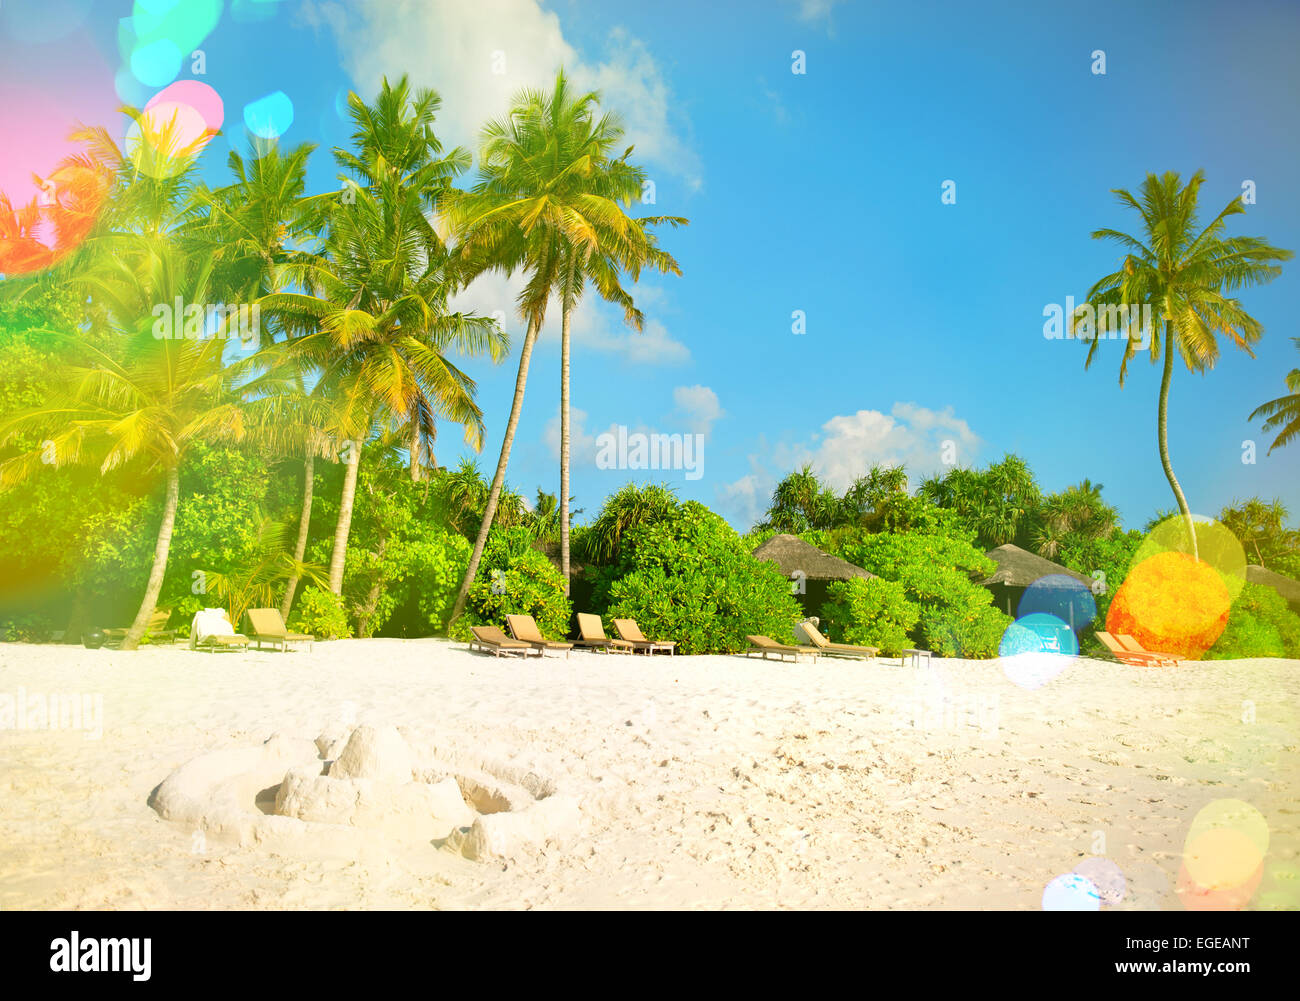 Plage de sable de l'île tropicale avec palmiers et ciel nuageux ciel bleu. Retro style tonique photo avec pénétration de la lumière Banque D'Images